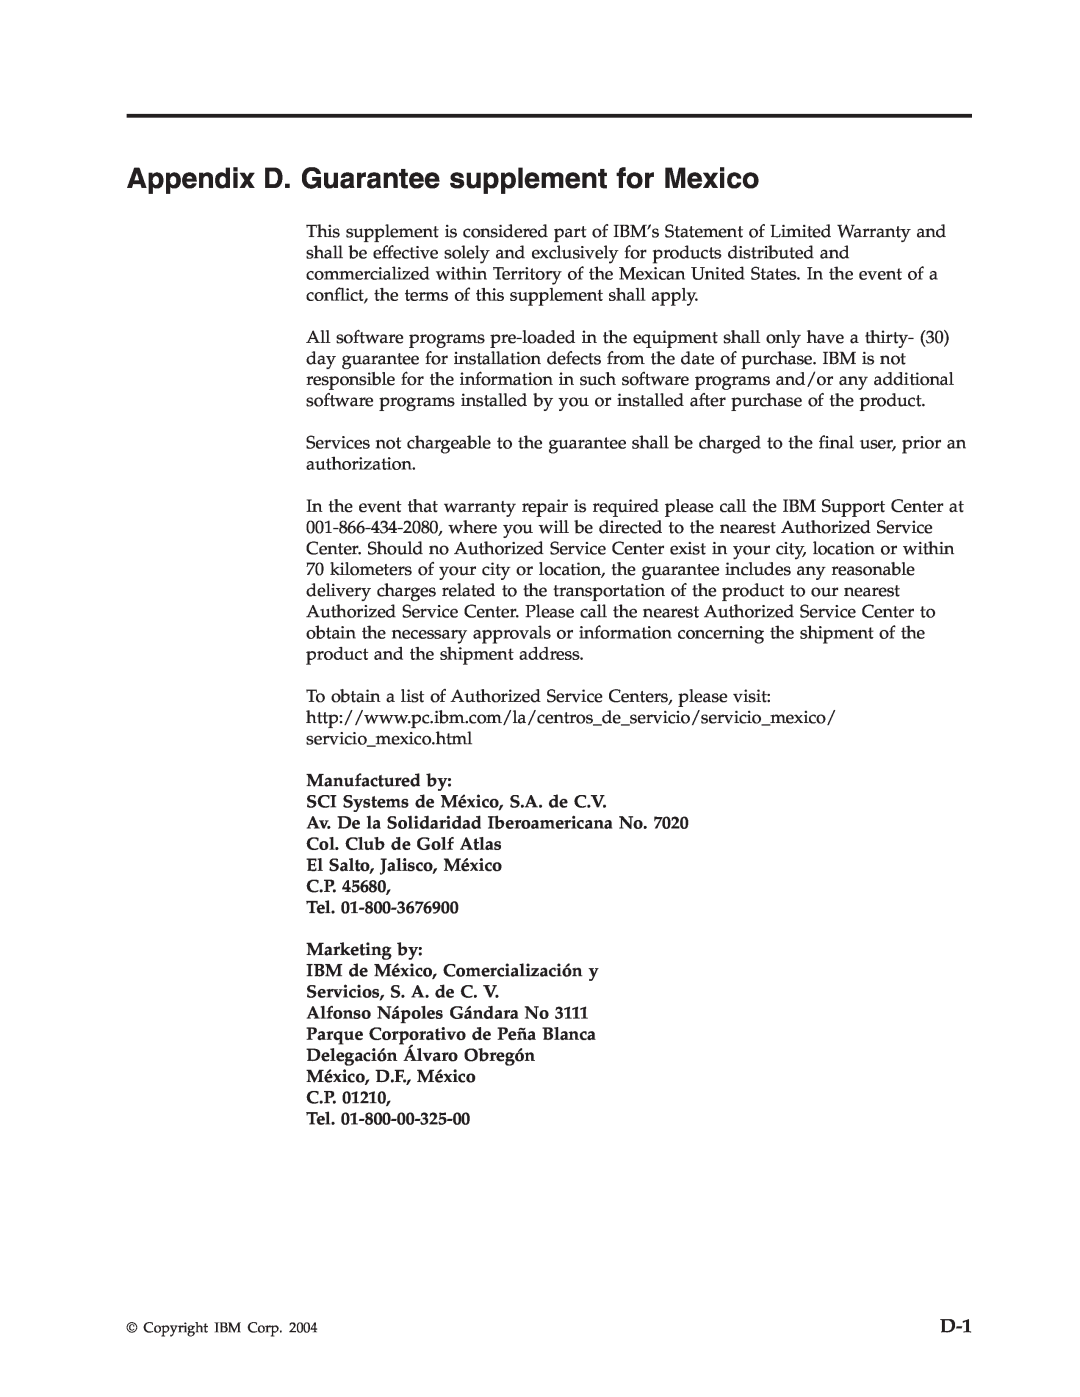 IBM 73P3315 manual Appendix D. Guarantee supplement for Mexico, Manufactured by SCI Systems de México, S.A. de C.V 